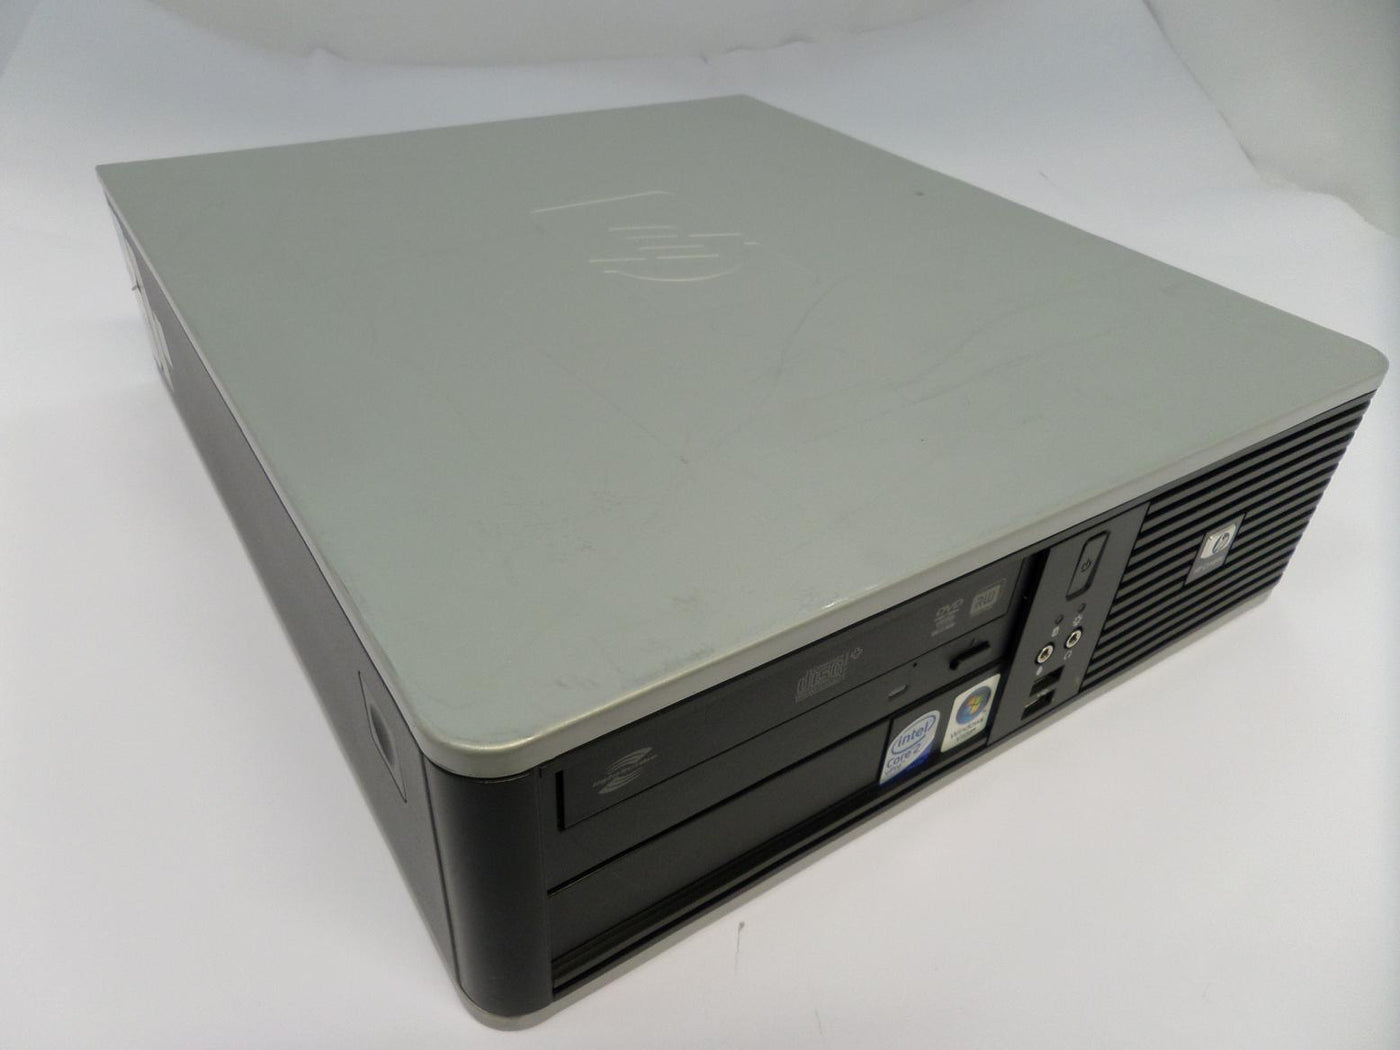 PR24849_KB930ET#ABU_HP Compaq dc7800p Core 2 Duo 2.66GHz SFF PC - Image2